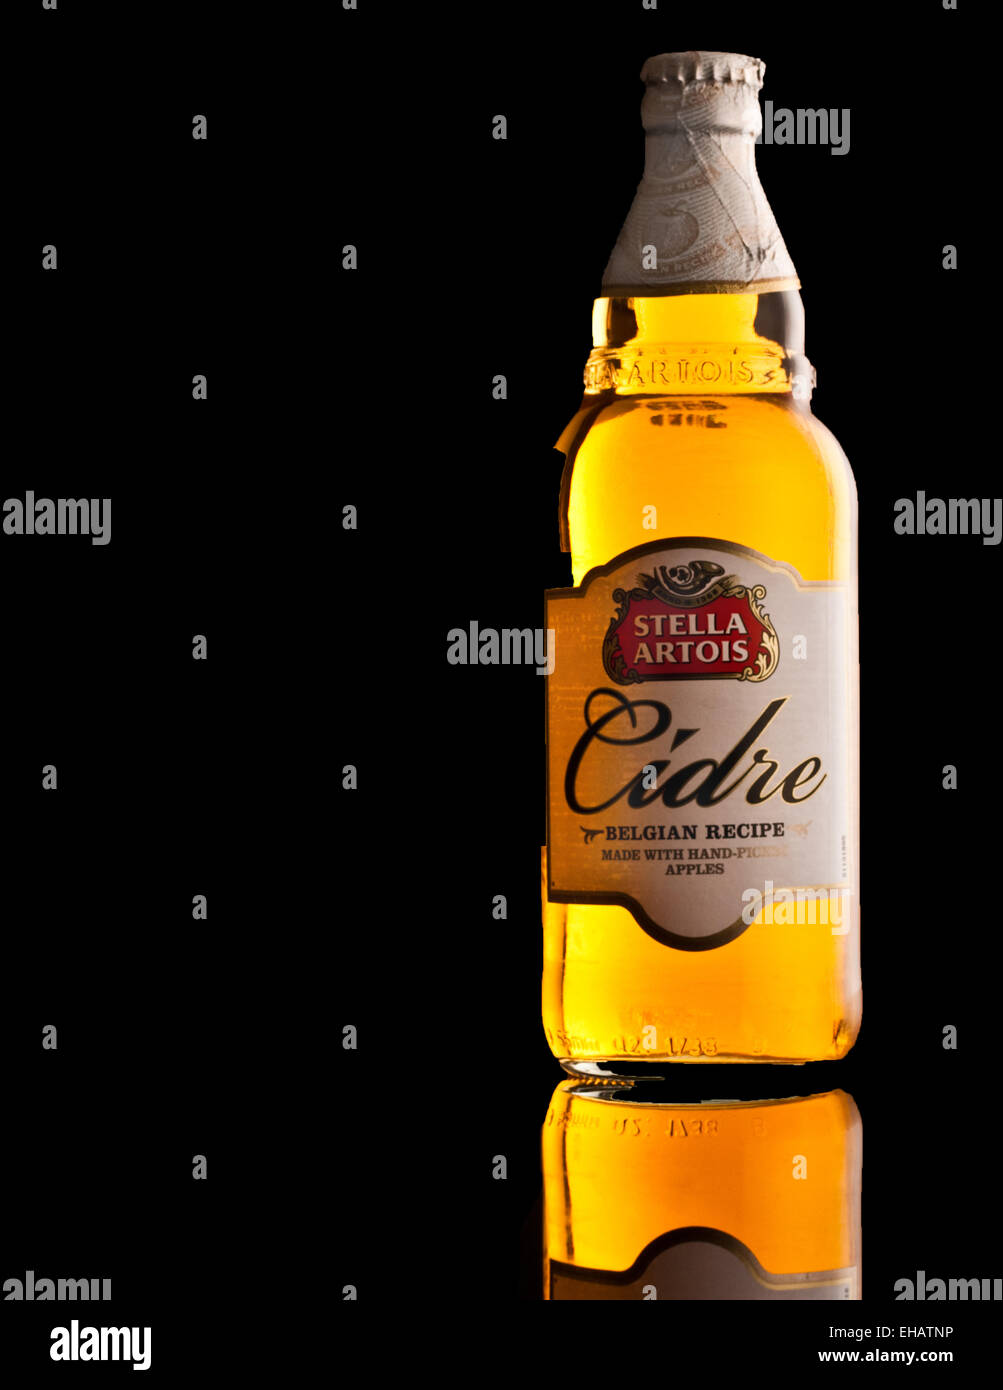 Bottle of Cidre/Cider Stock Photo